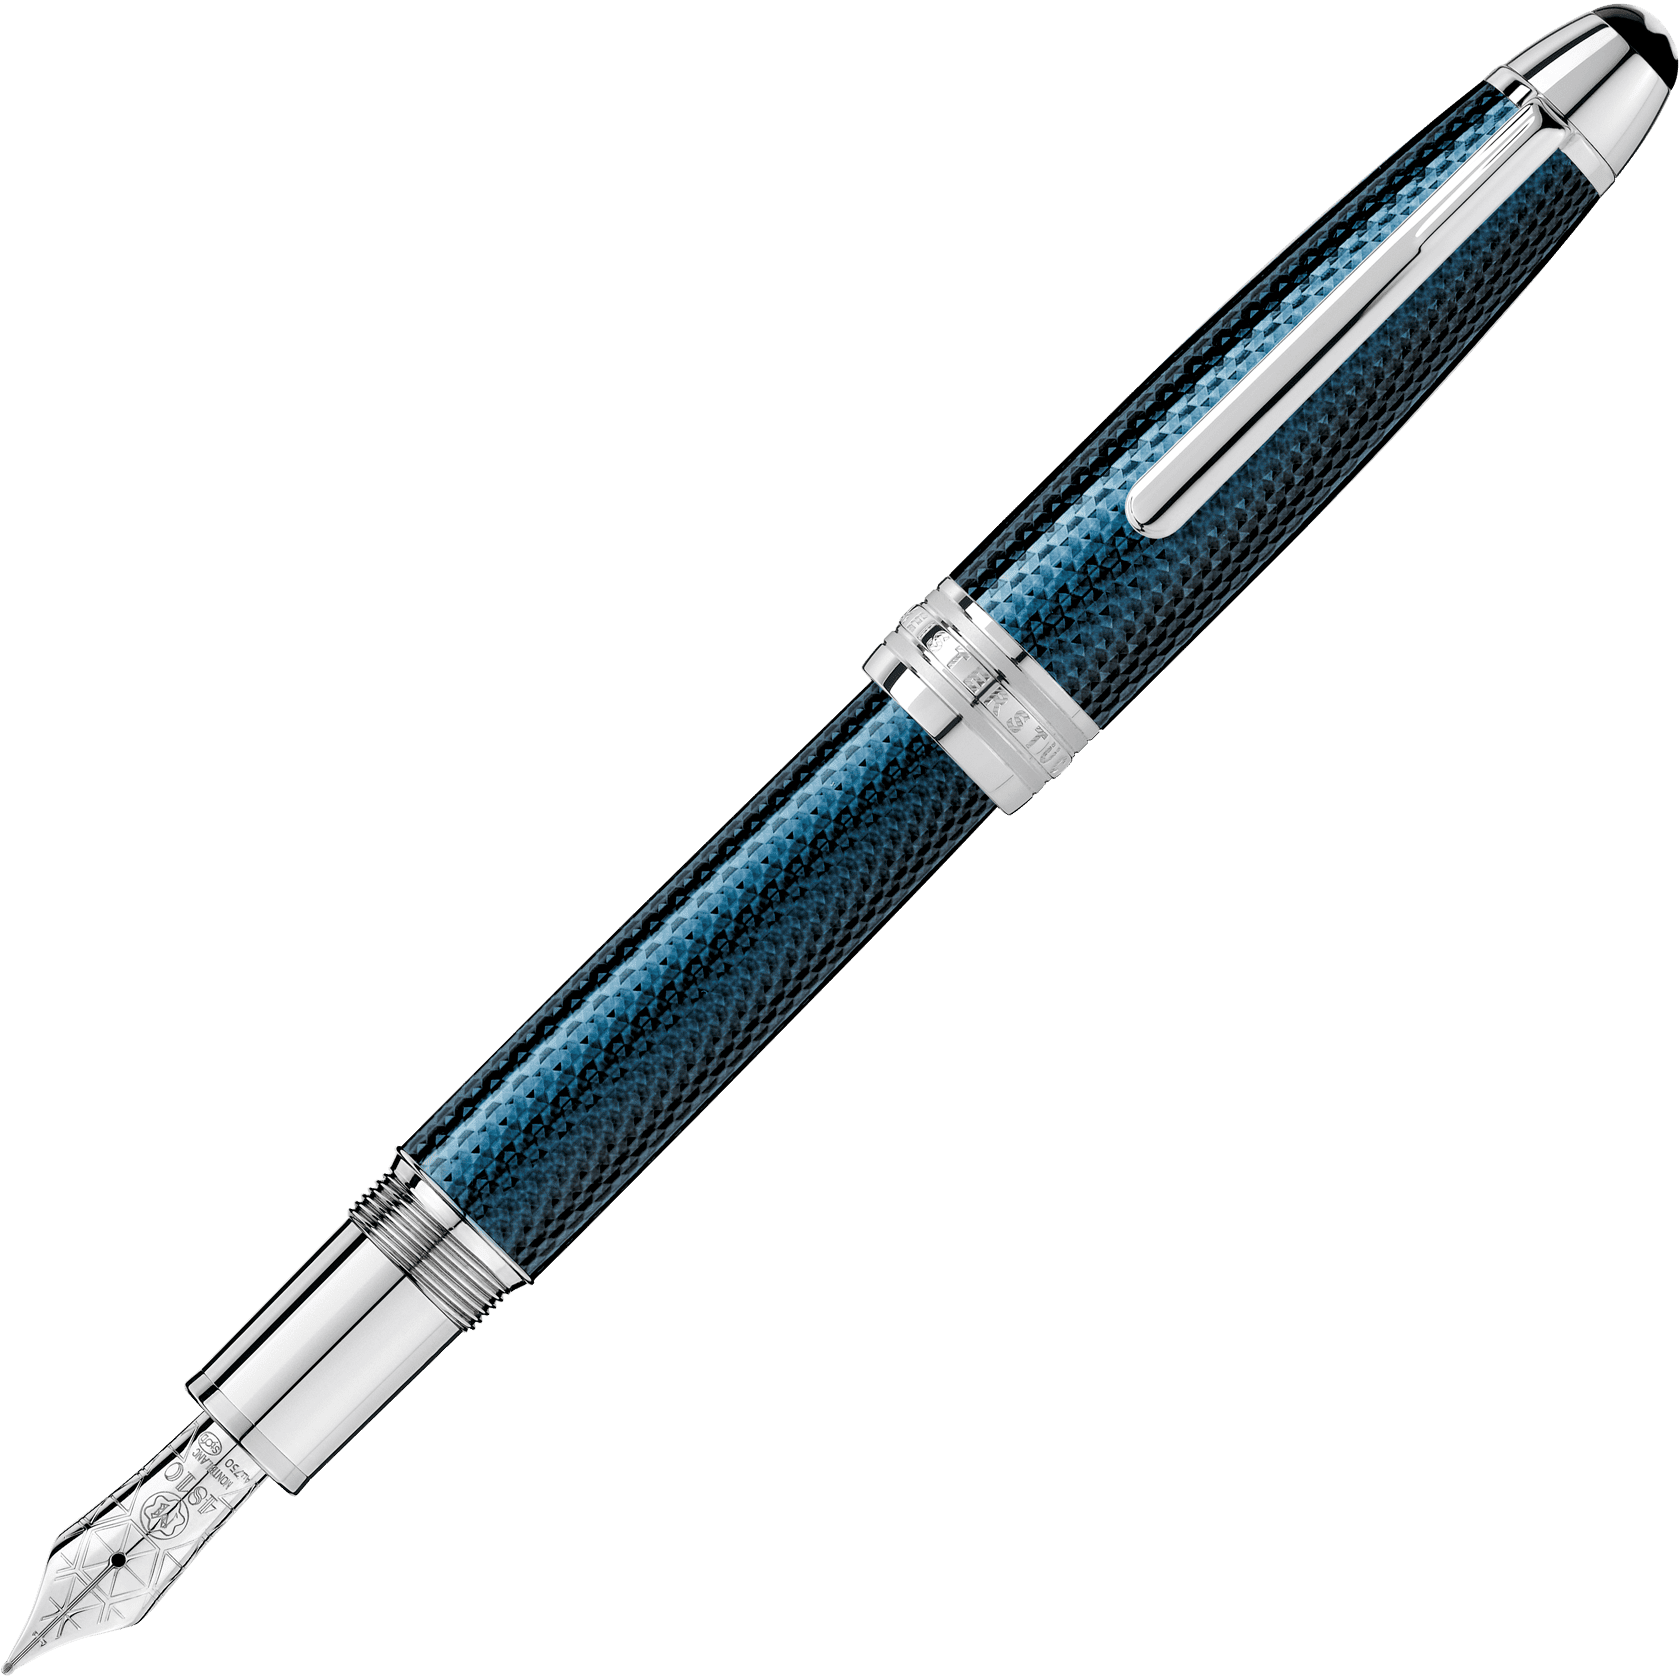 MeisterstÃ¼ck Solitaire Blue Hour LeGrand Fountain Pen